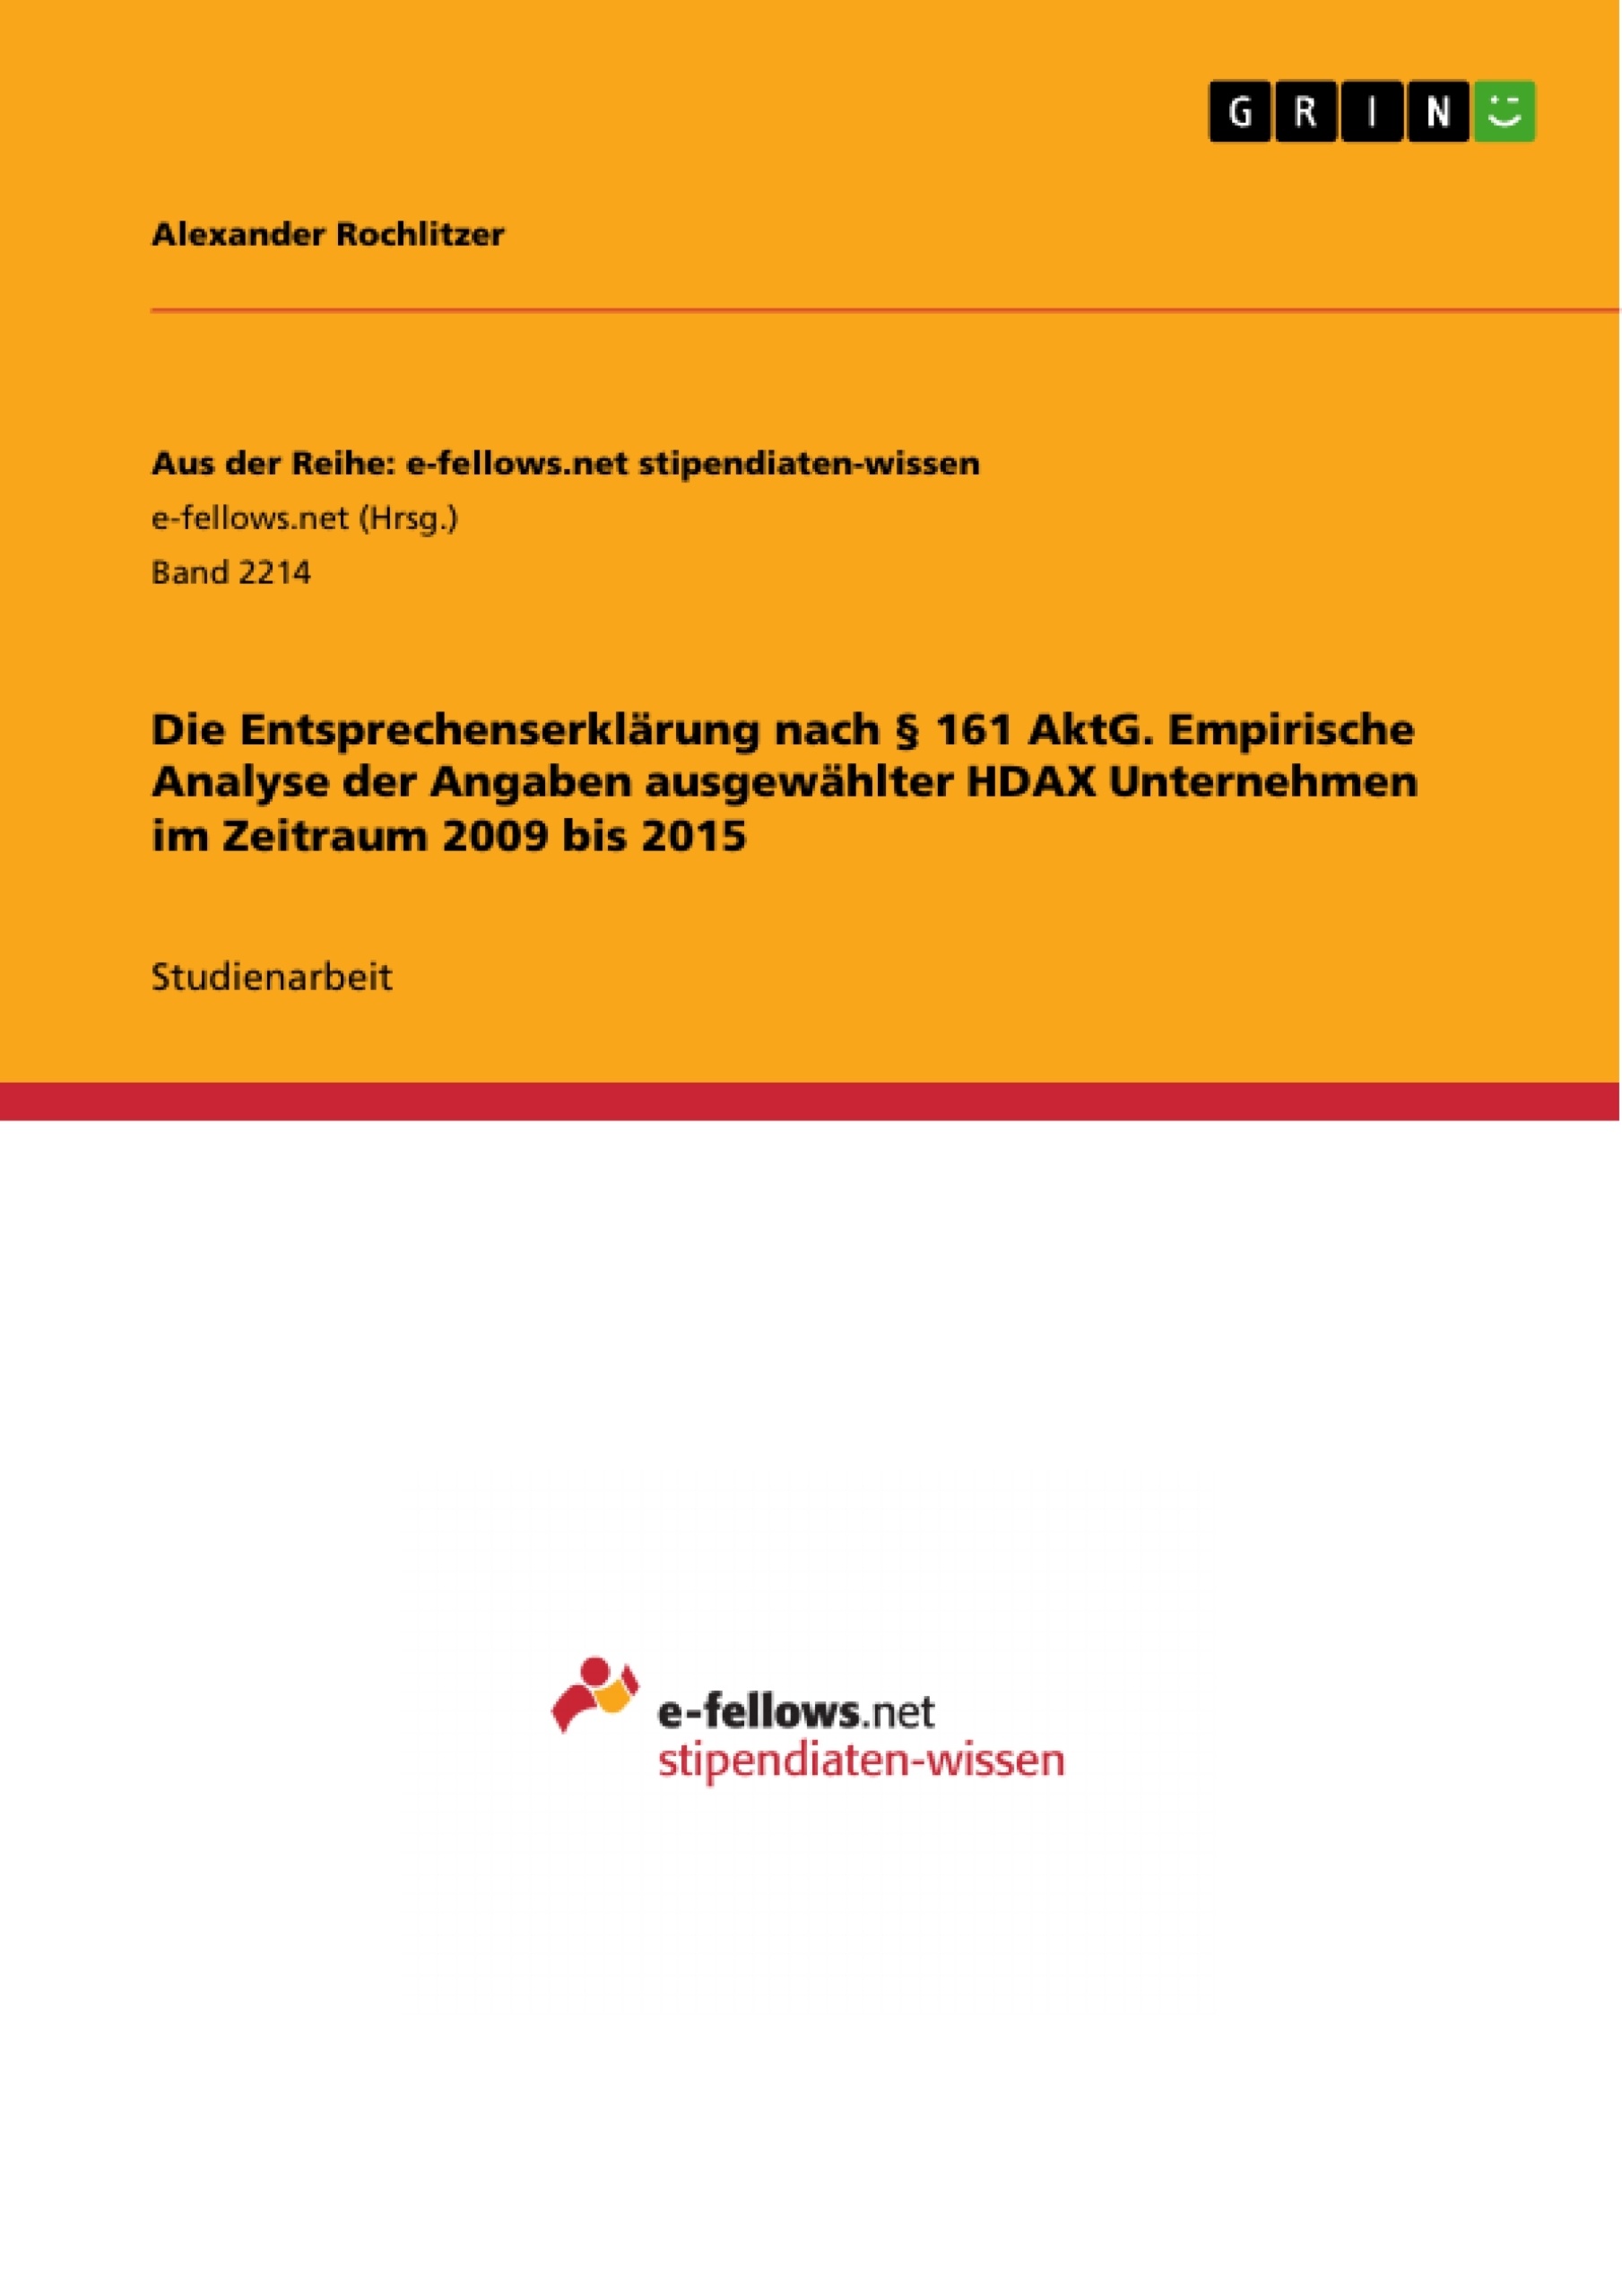 Titre: Die Entsprechenserklärung nach § 161 AktG. Empirische Analyse der Angaben ausgewählter HDAX Unternehmen im Zeitraum 2009 bis 2015